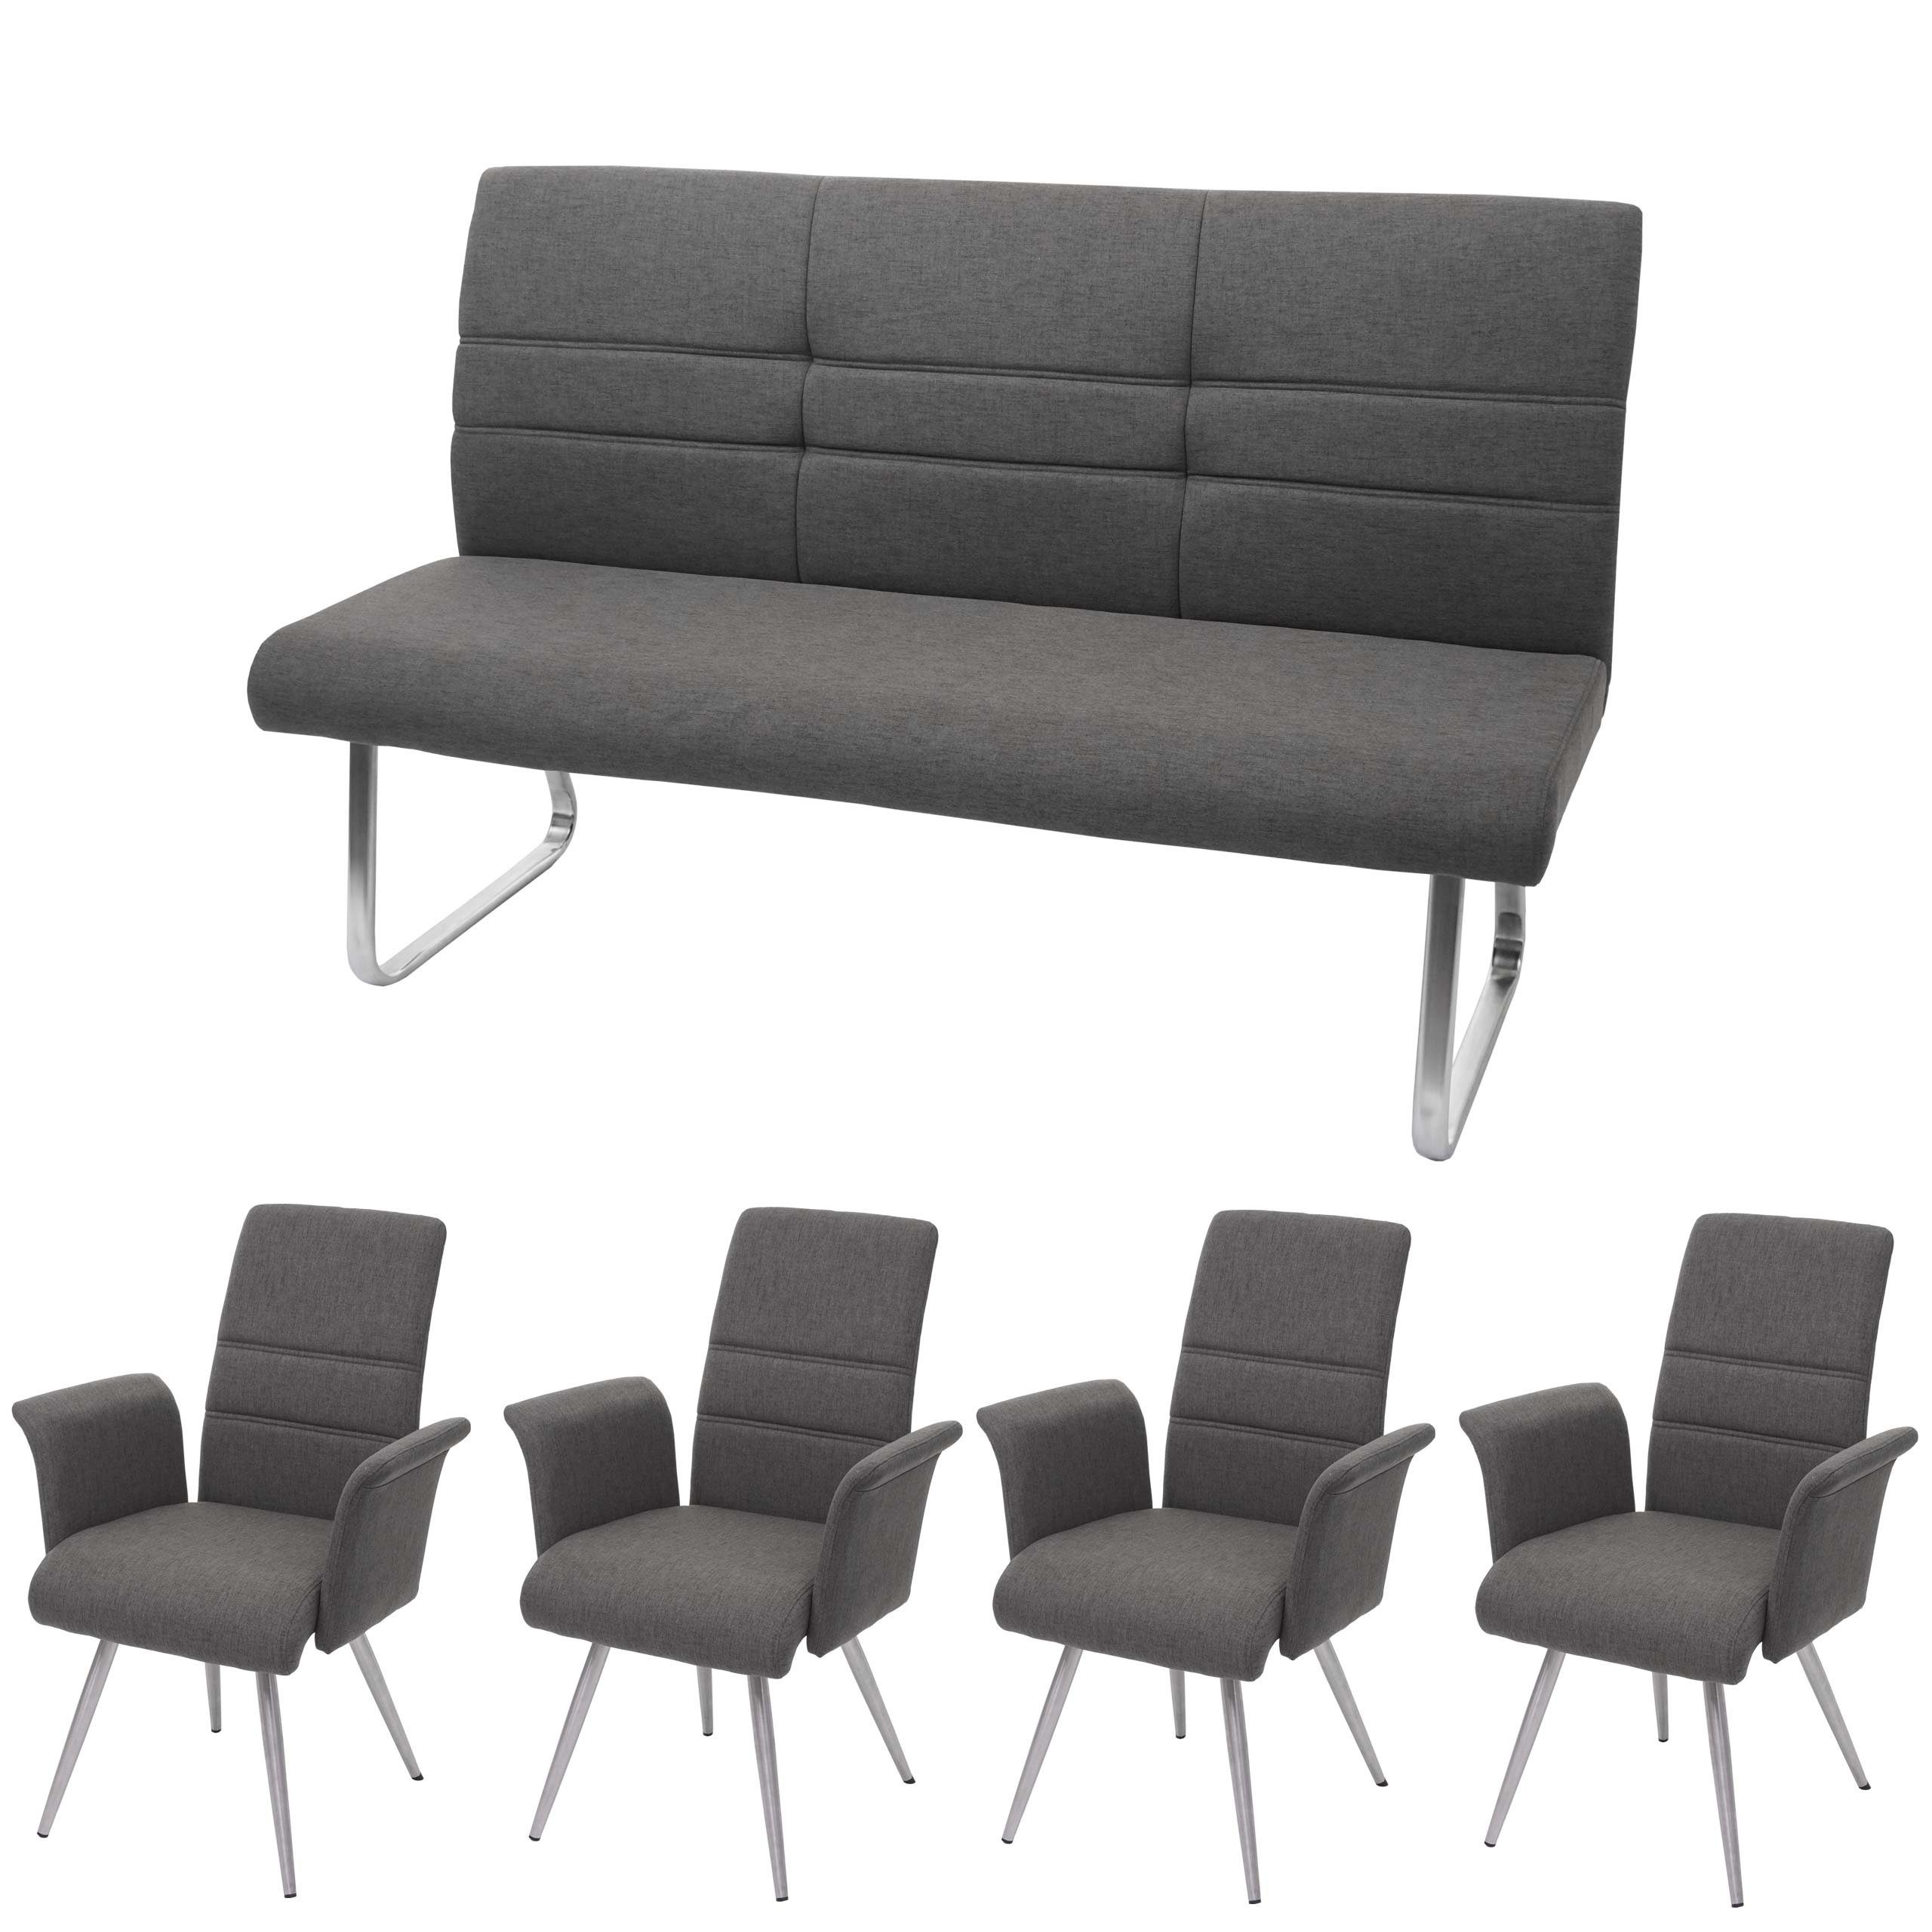 MCW Esszimmerstuhl MCW-G55-1 (Stühle mit Armlehne, 4 St), 4er-Set, inklusive 3-Sitzer Bank, abgerundete Ecken, Fußbodenschoner